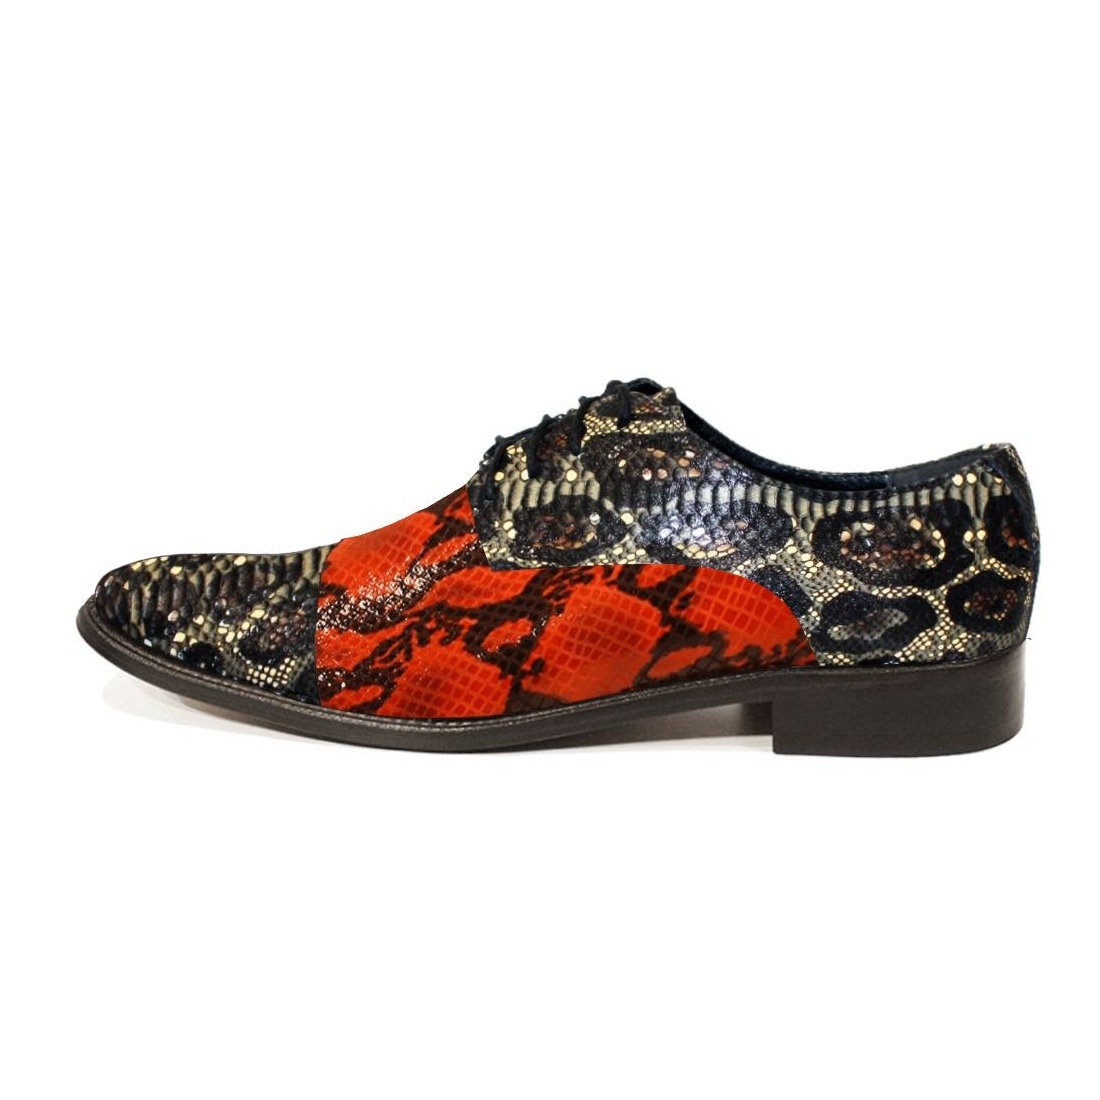 Modello Magello - Scarpe Classiche - Handmade Colorful Italian Leather Shoes